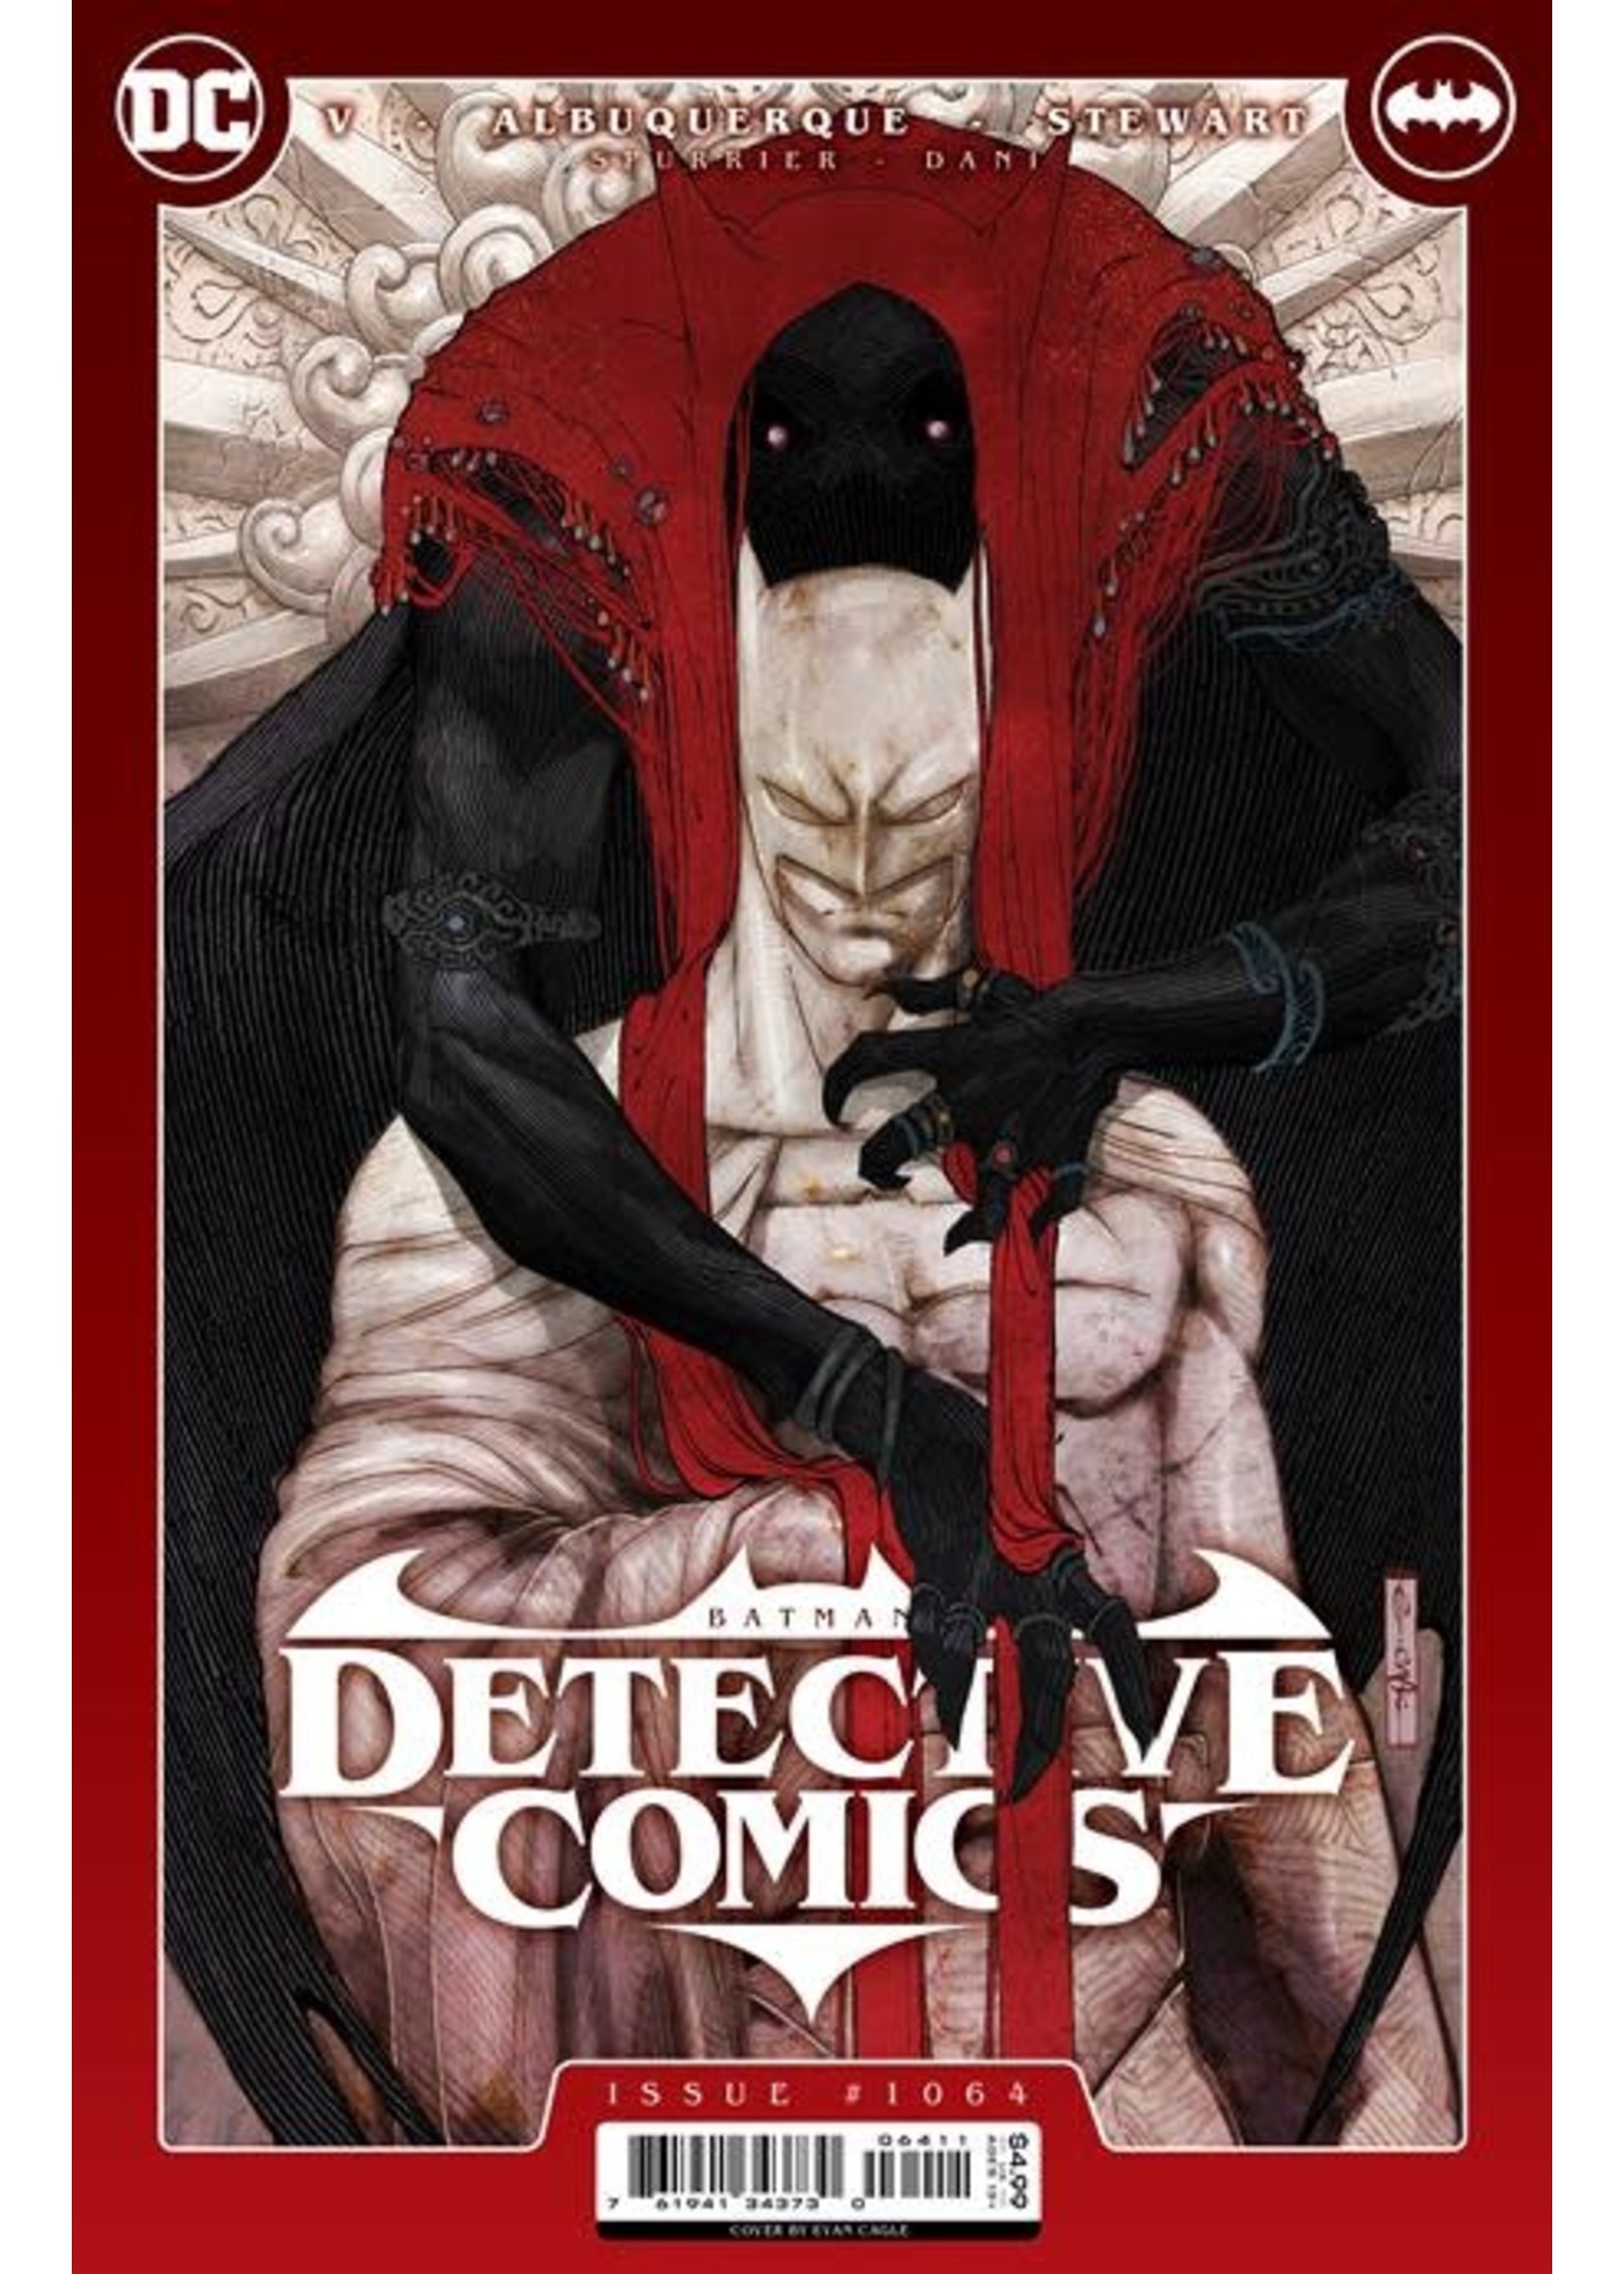 DC COMICS DETECTIVE COMICS #1064 CVR A EVAN CAGLE